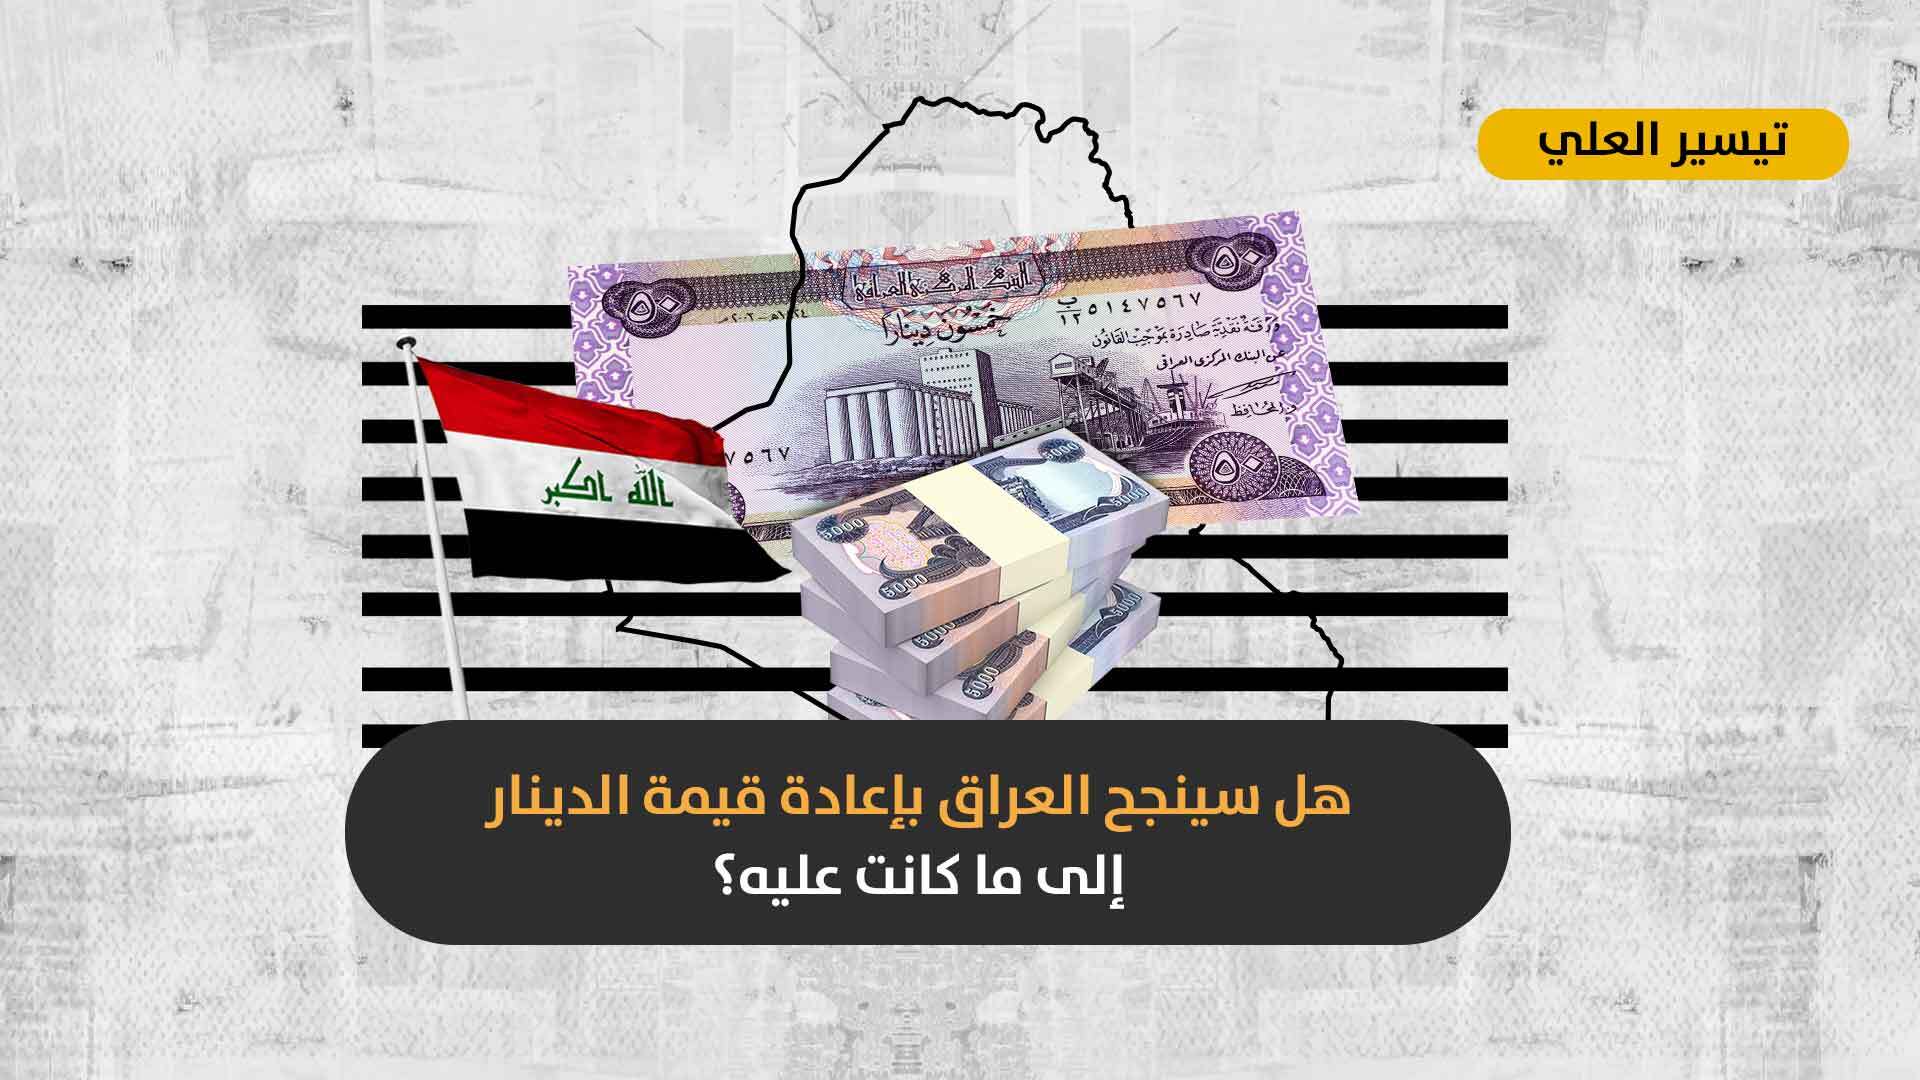 وسط ازدياد المعاناة المعيشية في البلاد: لماذا ترفض جهات سياسية عراقية تخفيض قيمة الدولار مجدداً؟